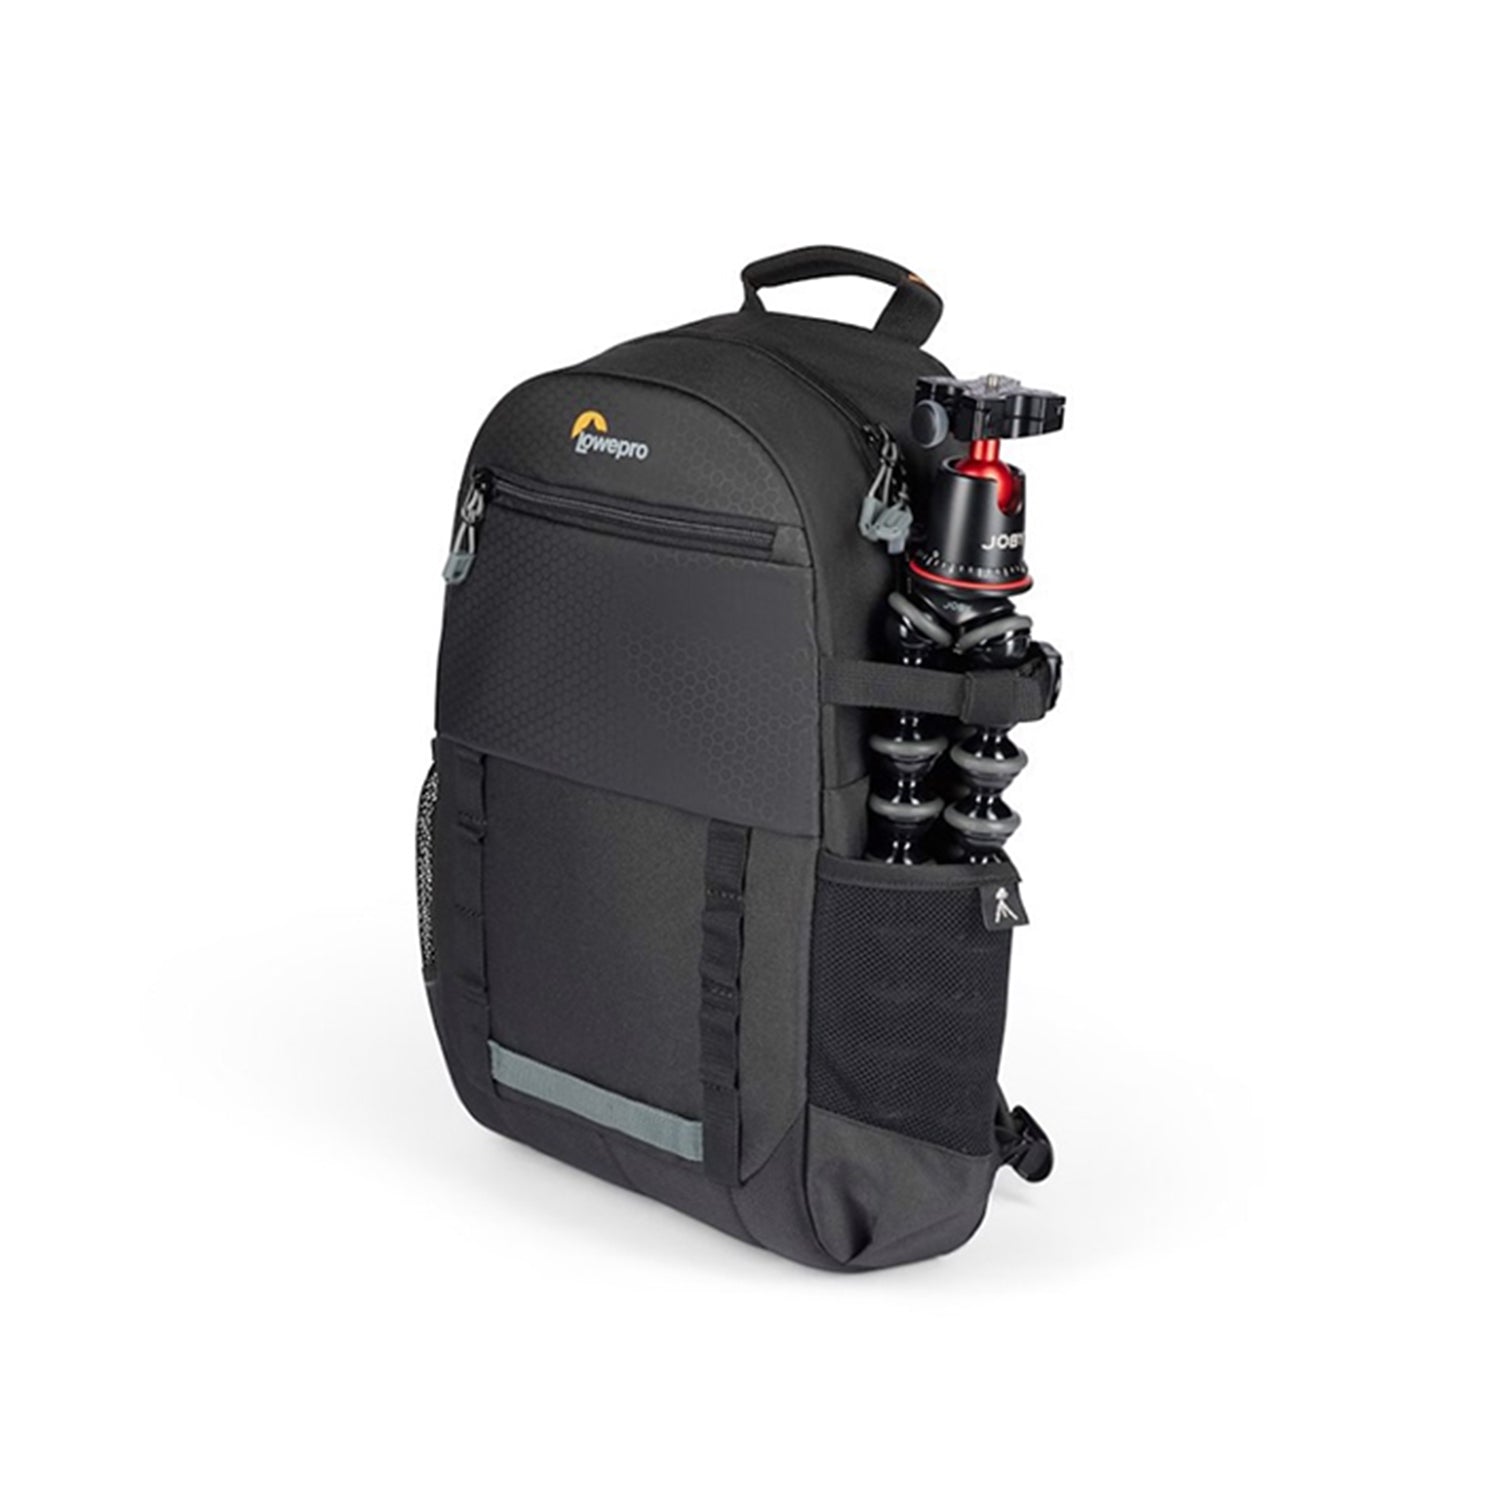 Lowepro Adventura BP 150 III Camera Backpack Bag